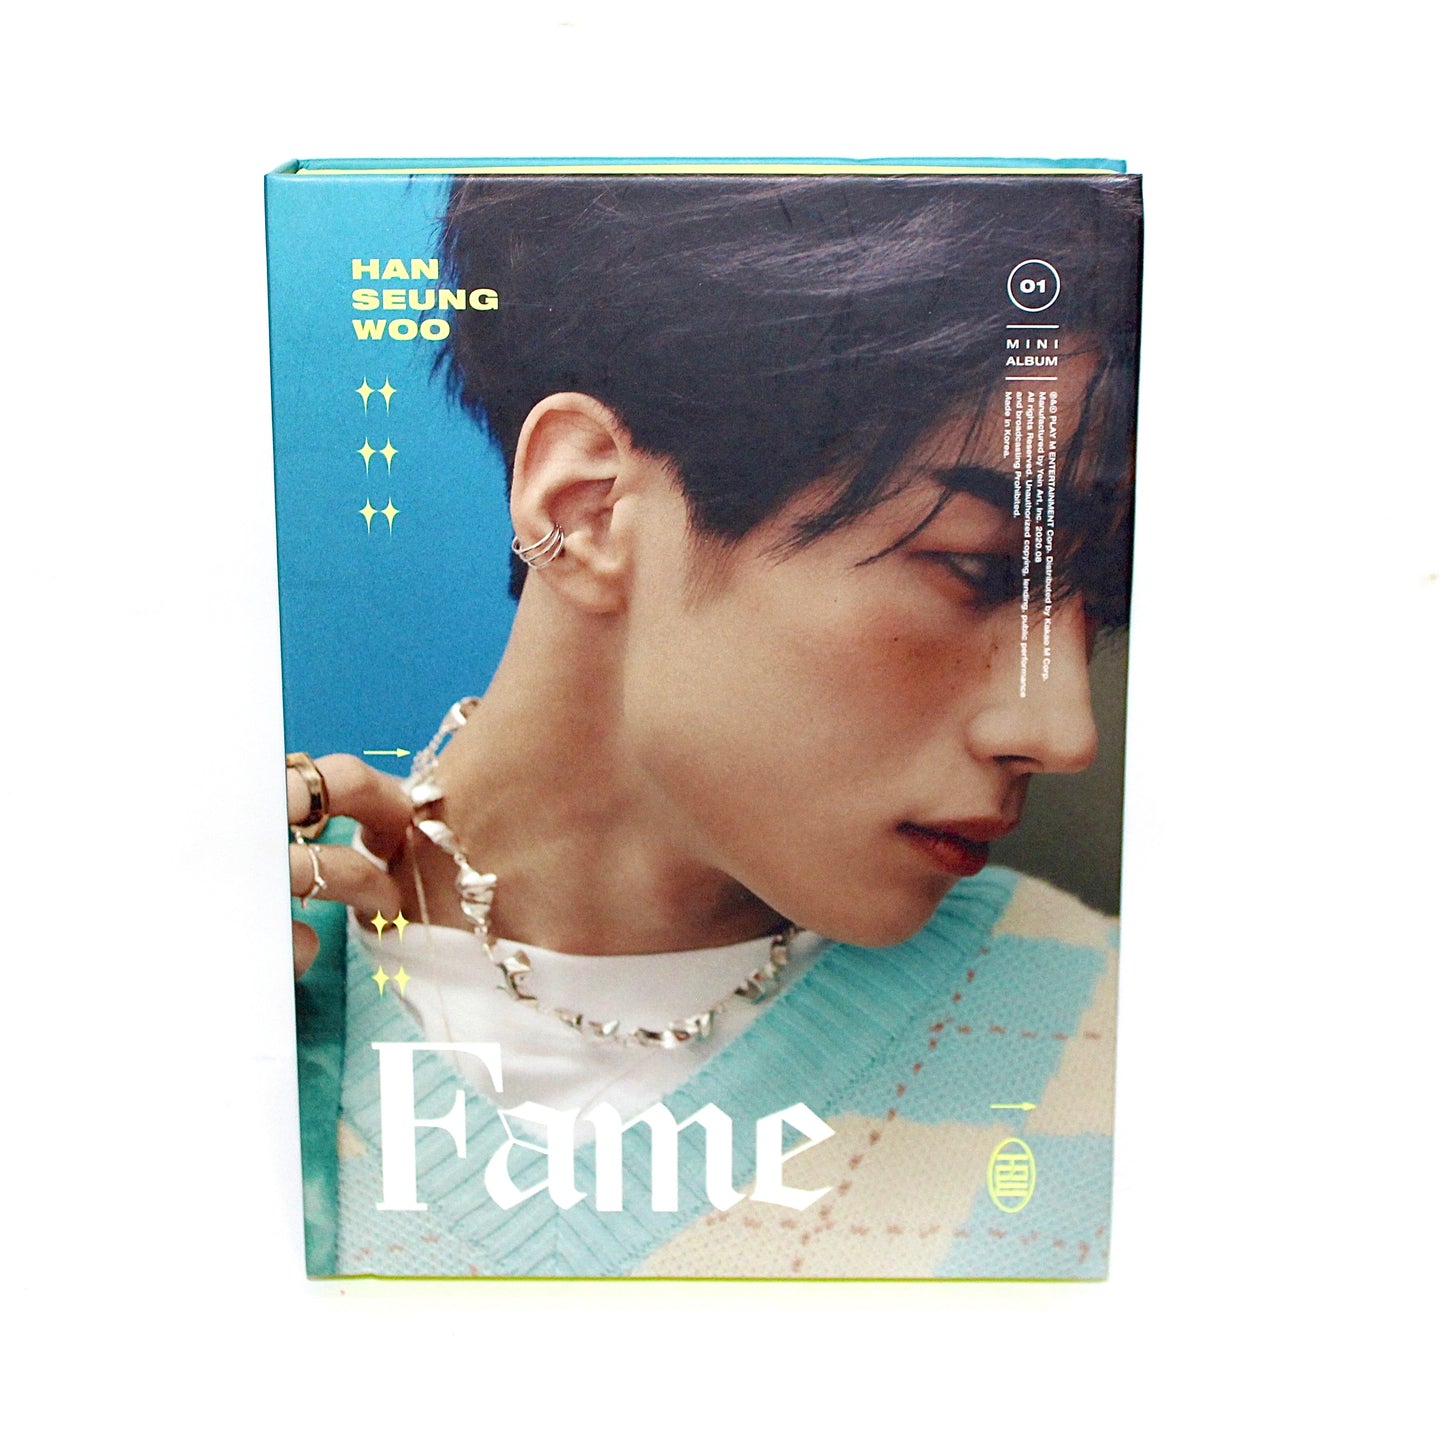 HAN SEUNG WOO 1st Mini Album: Fame | Han Ver.